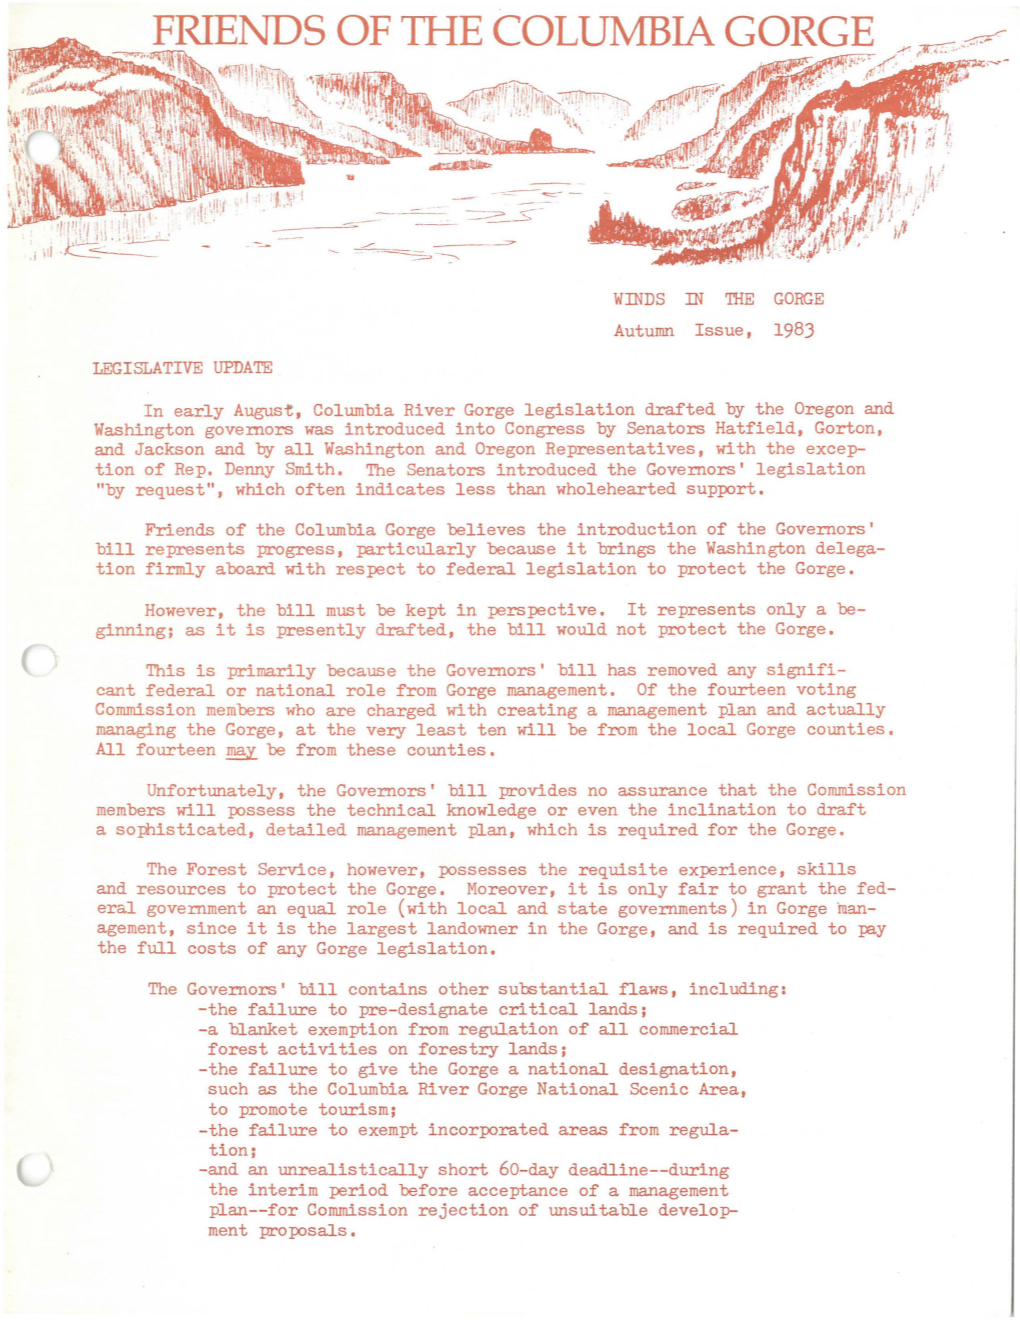 Autumn Issue, 1983 LEGISLATIVE UPDATE